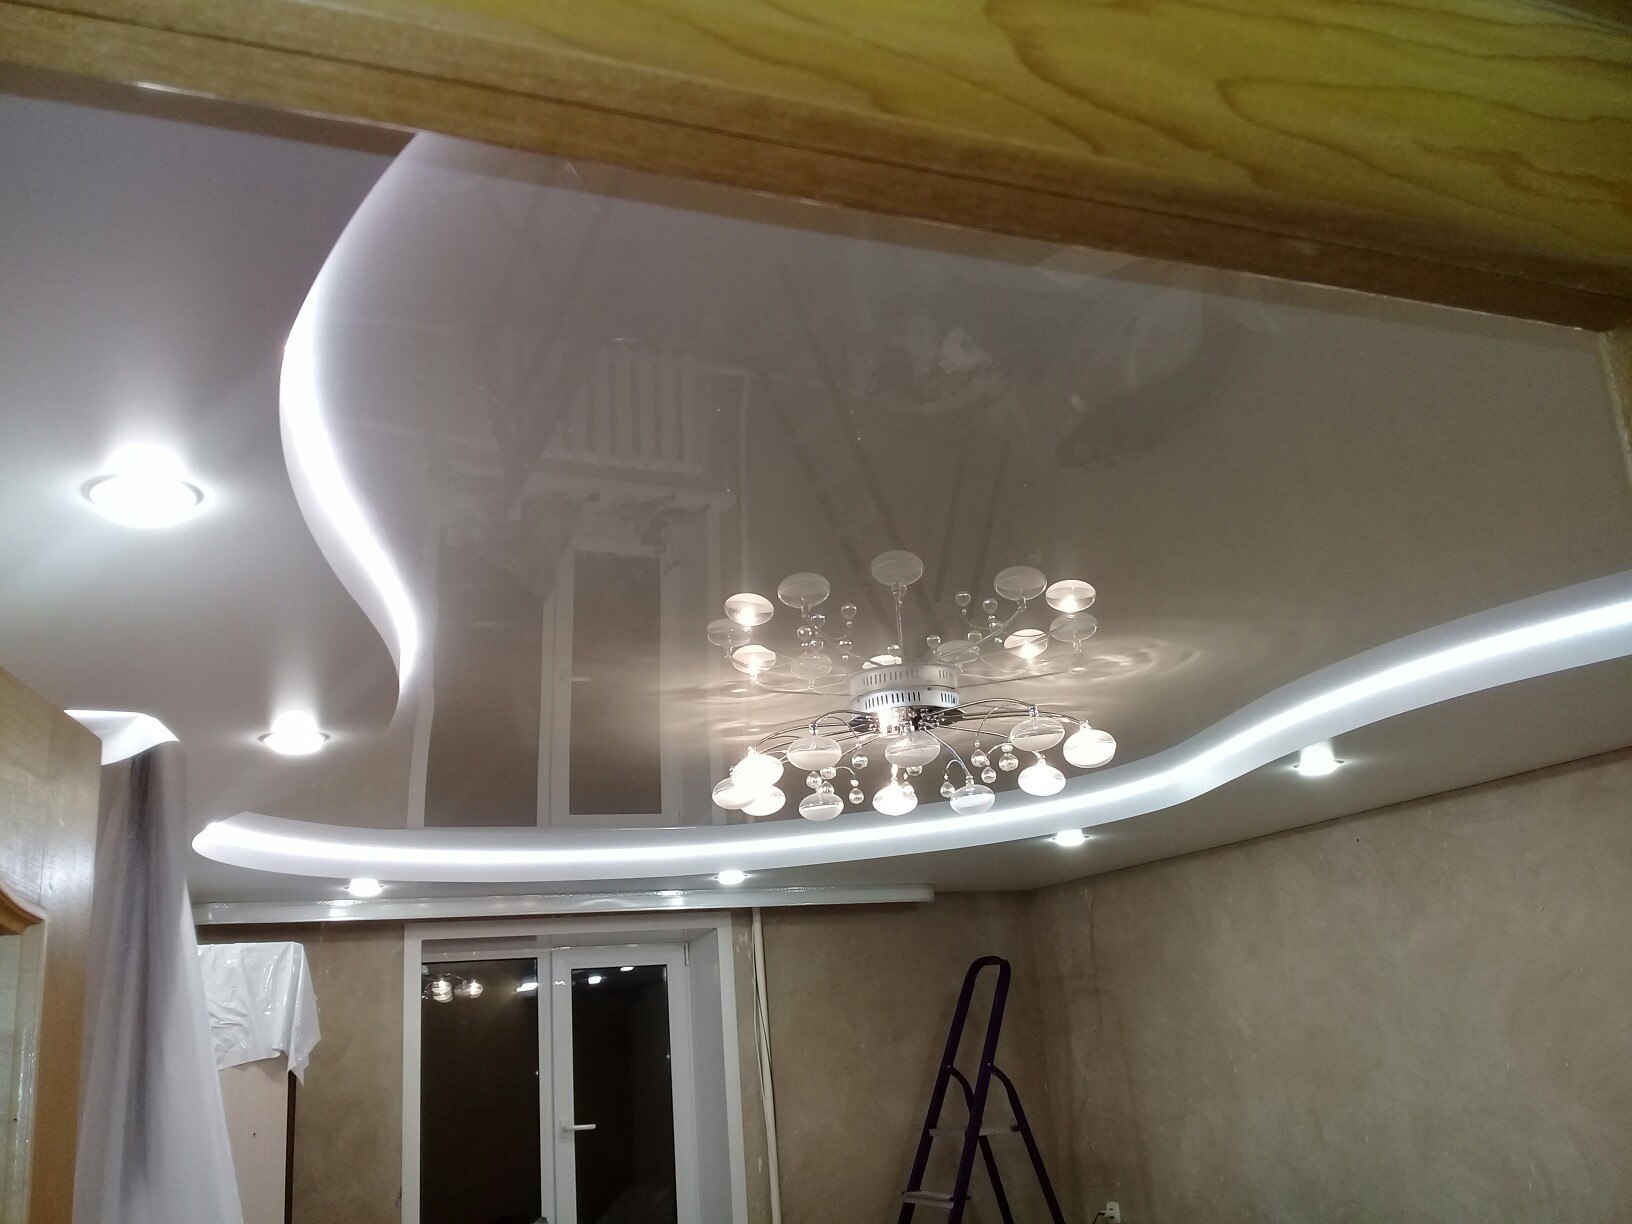 Двухуровневые натяжные потолки с подсветкой в зал